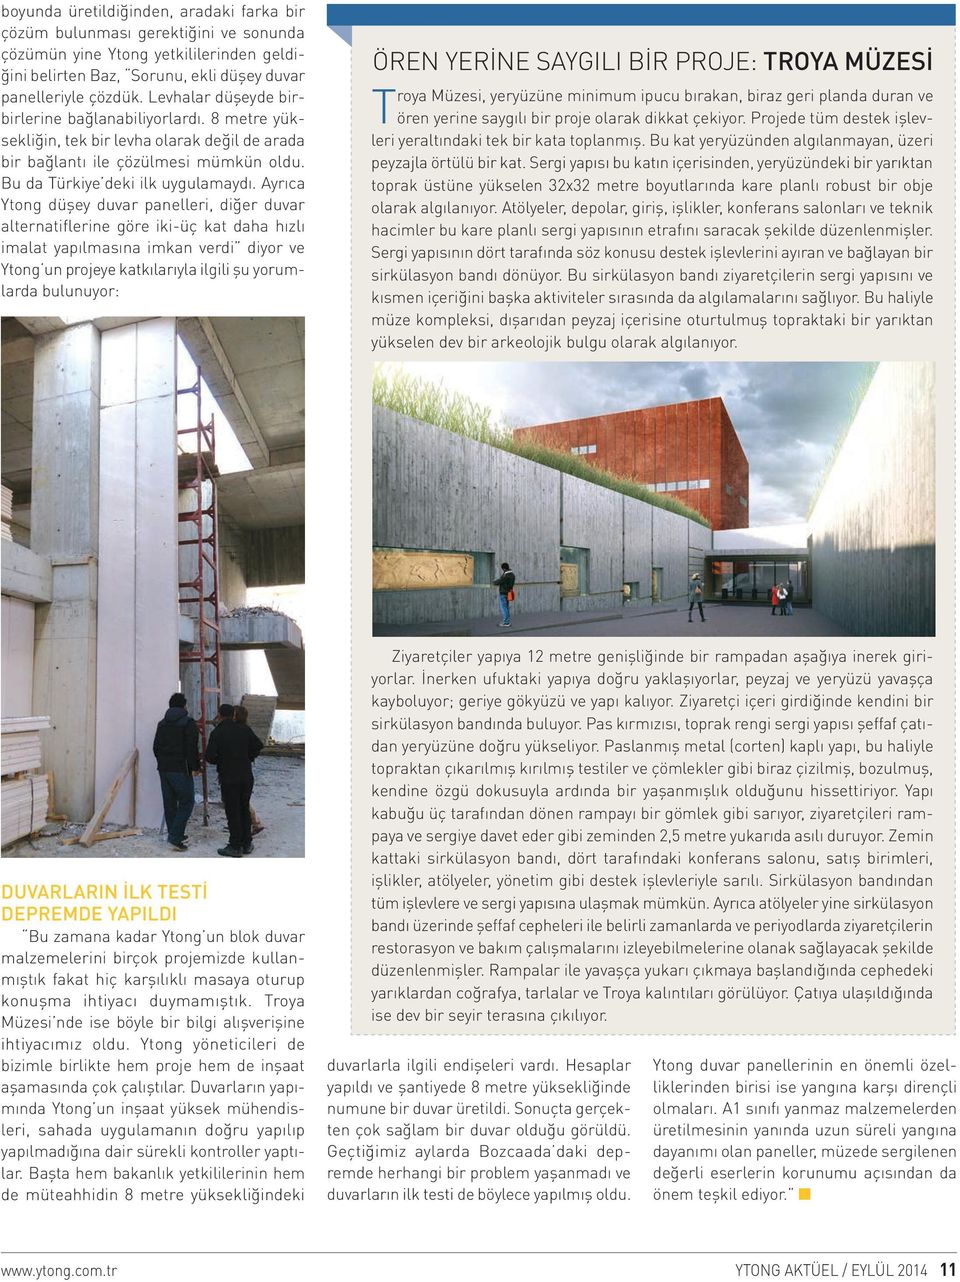 Ayrıca Ytong düşey duvar panelleri, diğer duvar alternatiflerine göre iki-üç kat daha hızlı imalat yapılmasına imkan verdi diyor ve Ytong un projeye katkılarıyla ilgili şu yorumlarda bulunuyor: ÖREN